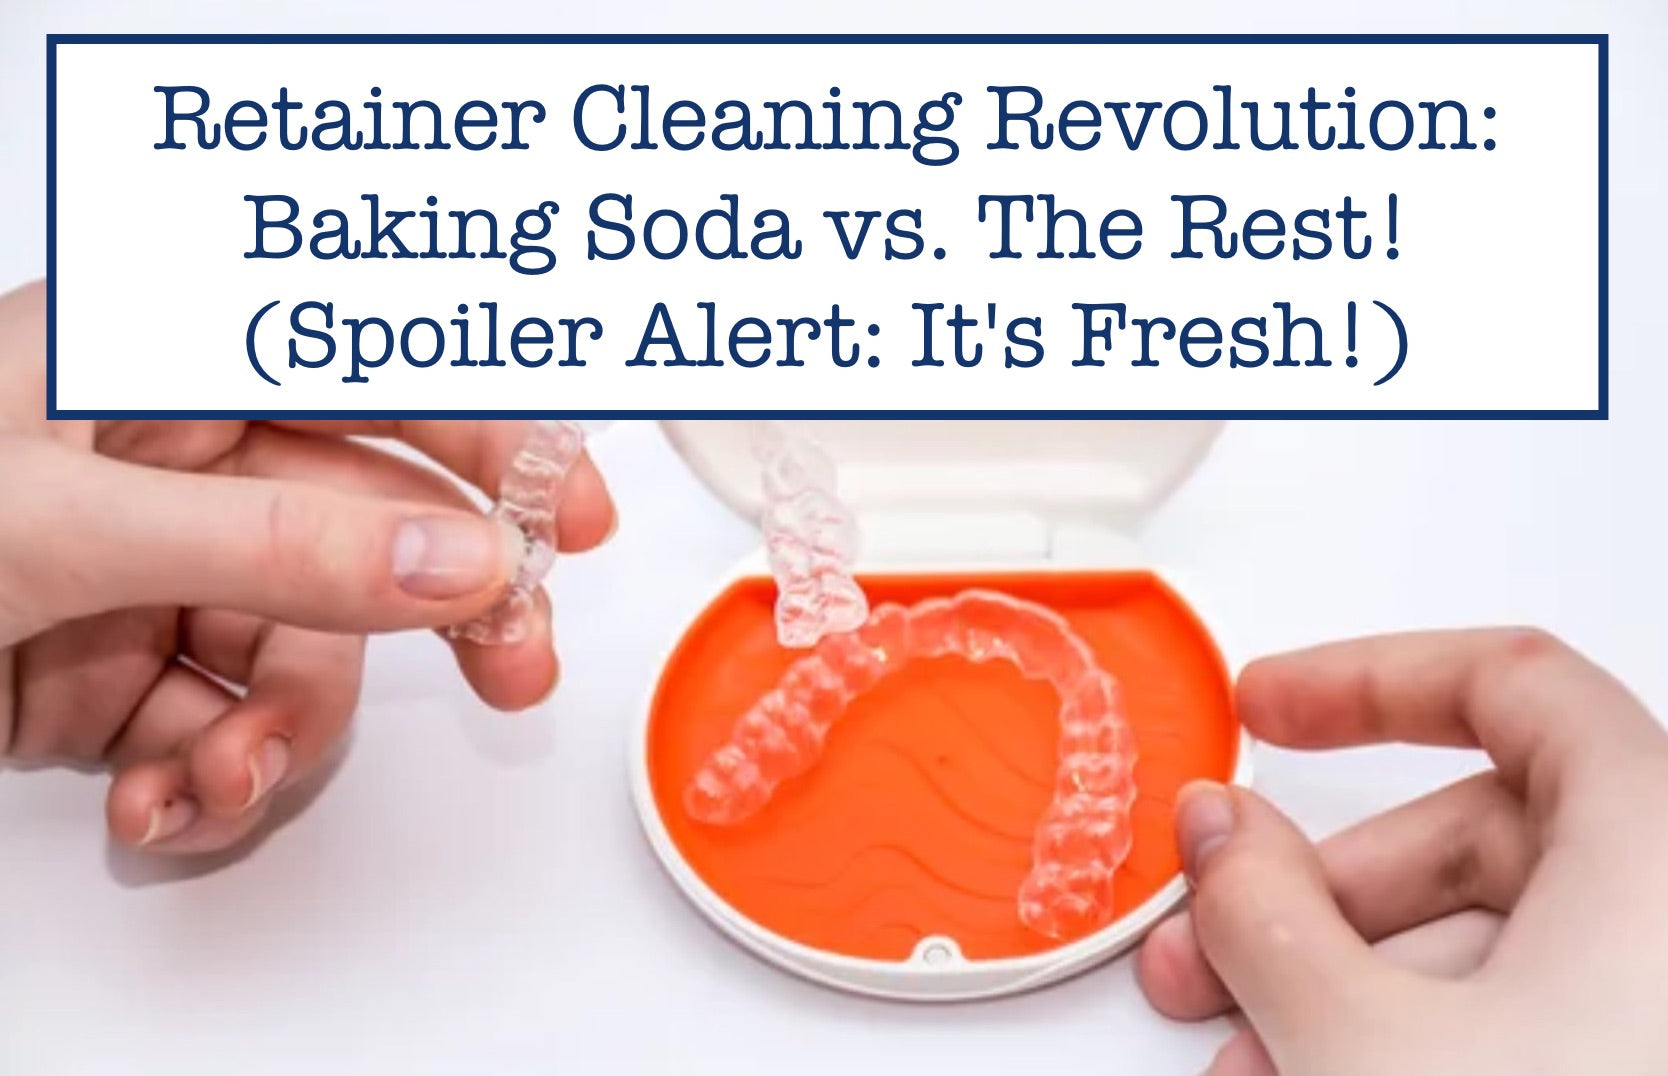 Retainer Cleaning Revolution: Baking Soda vs. The Rest! (Spoiler Alert: It's Fresh!)